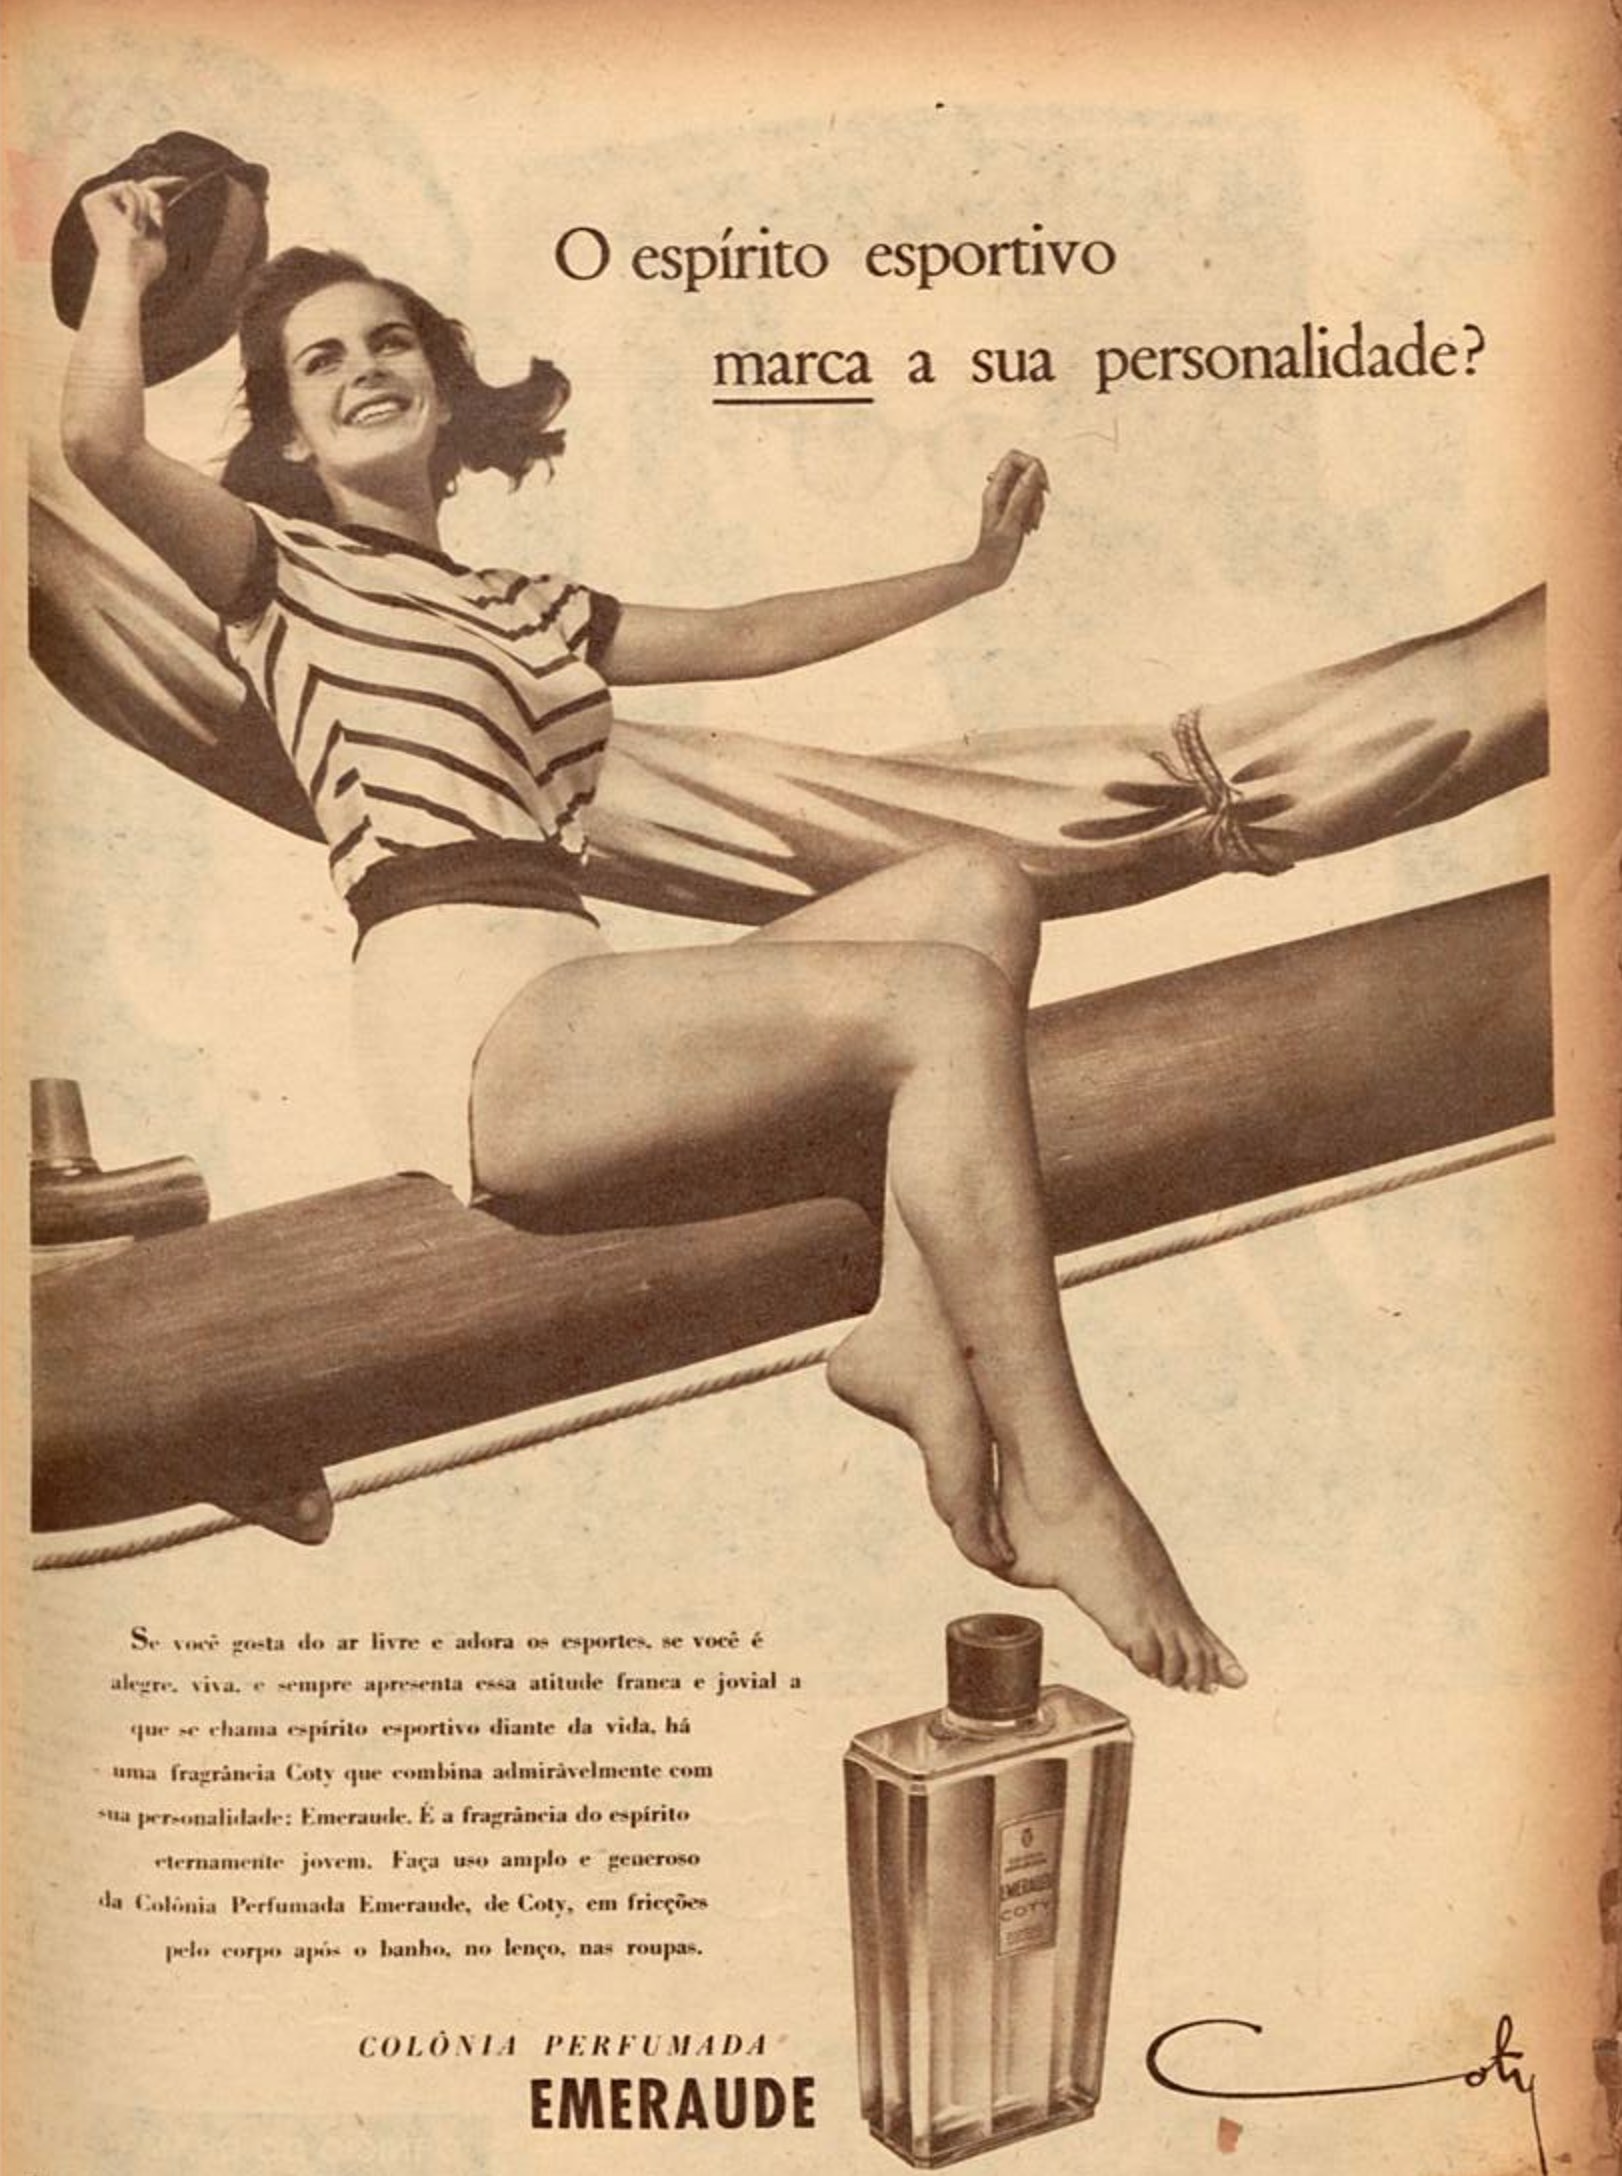 Campanha da Perfumaria Emeraude apresentando sua colônia no ano de 1951